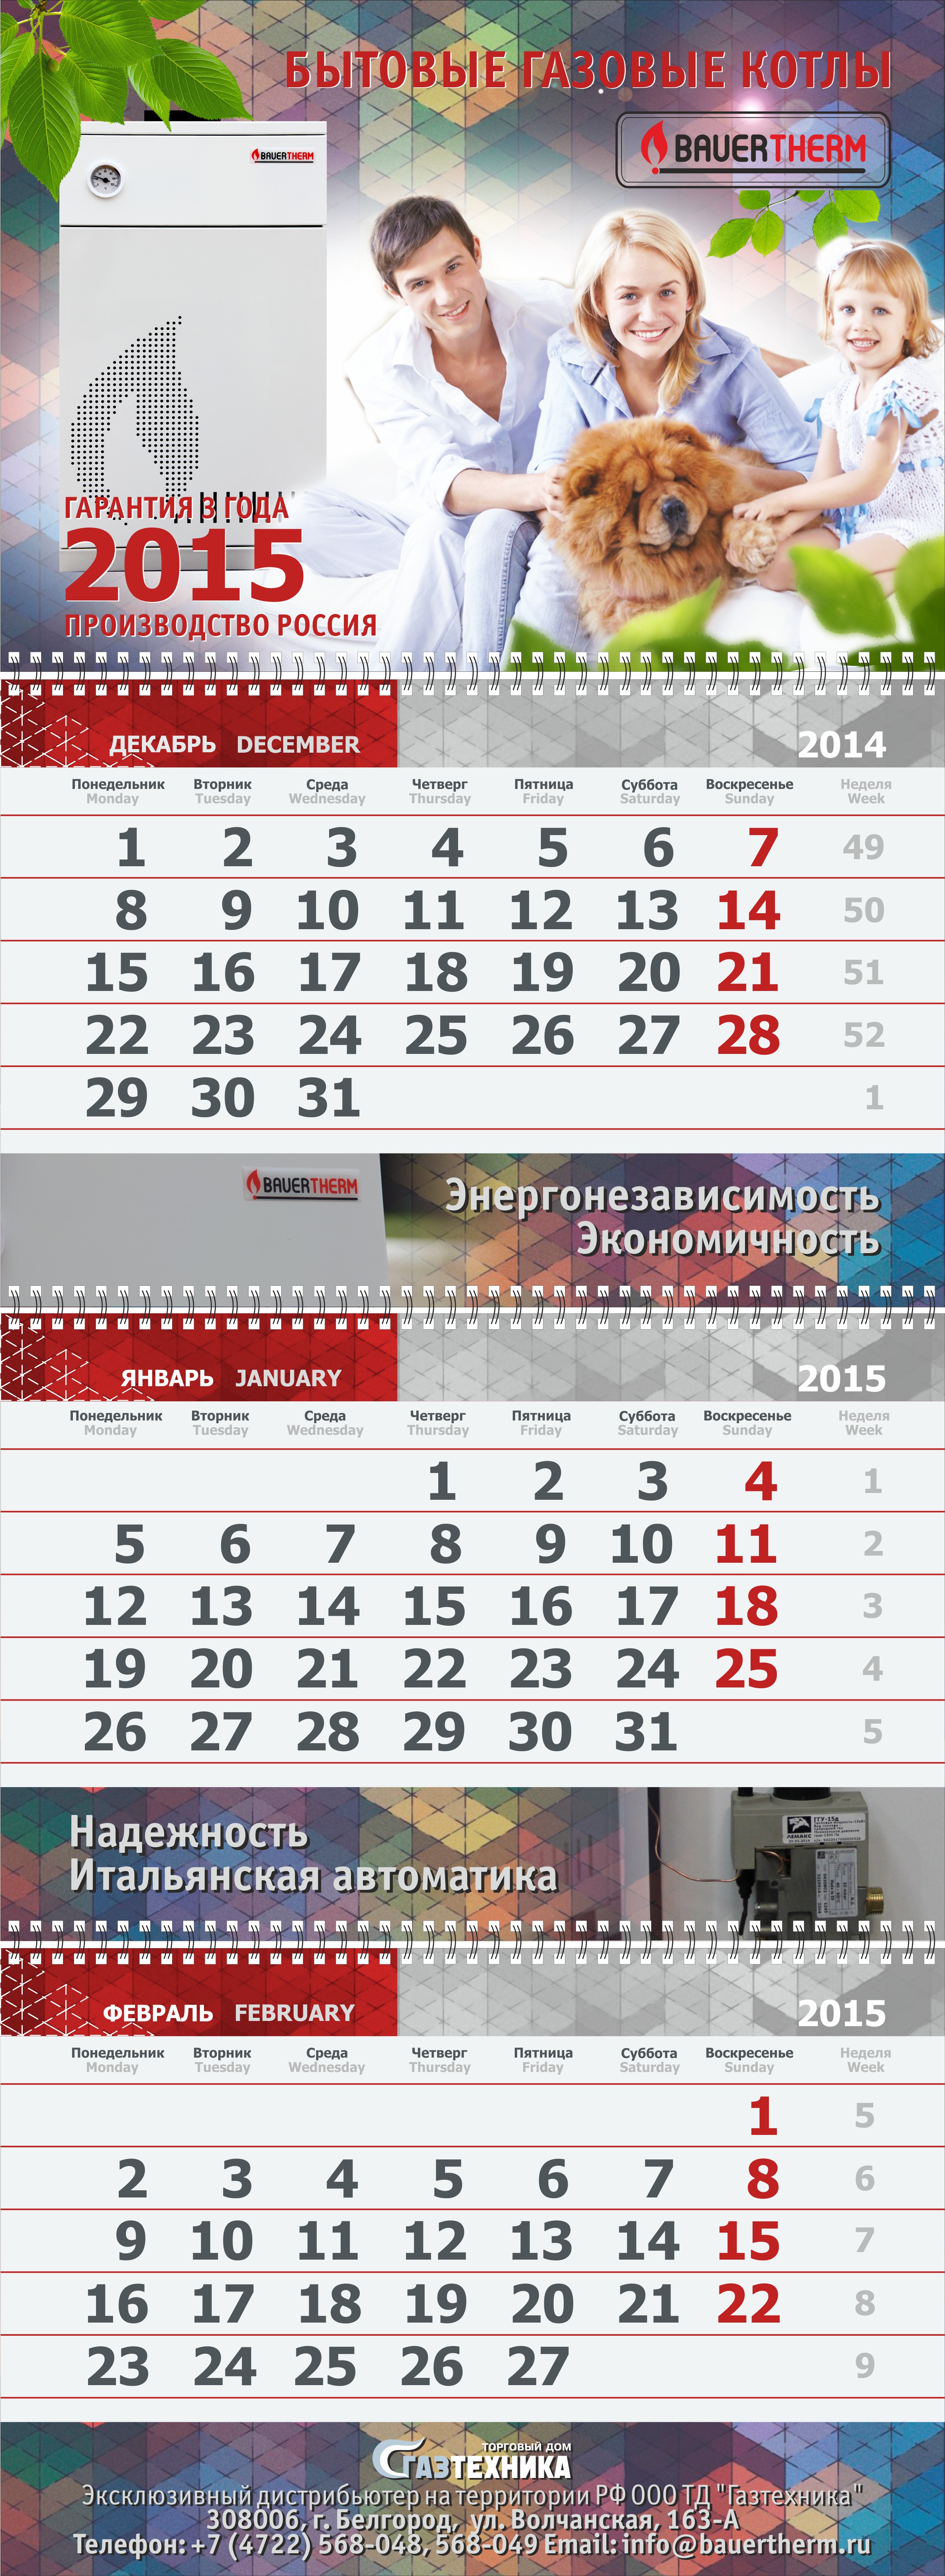 Календарь Газотехника